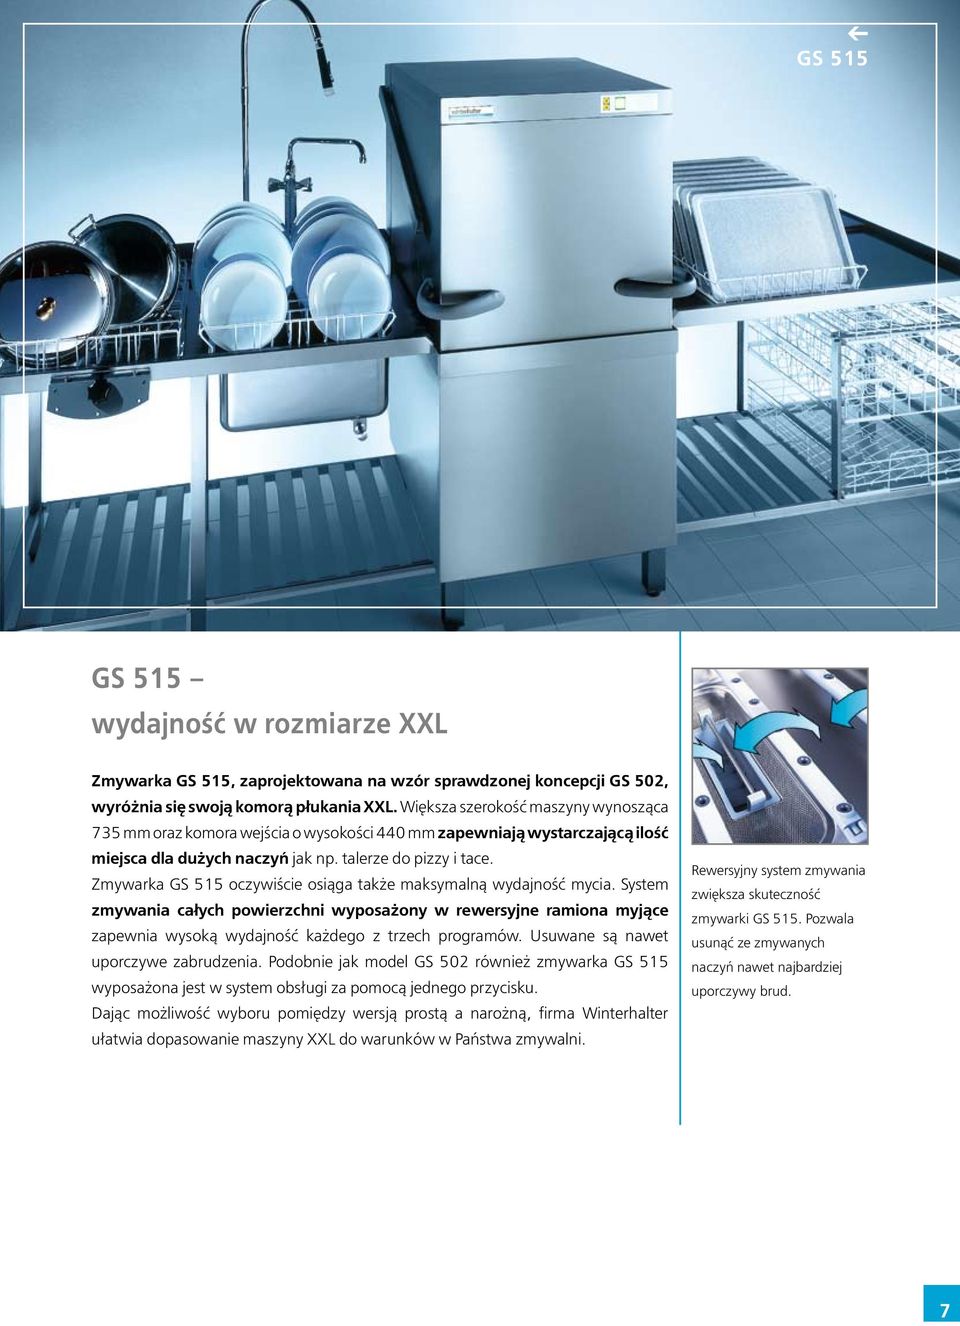 Zmywarka GS 515 oczywiście osiąga także maksymalną wydajność mycia. System zmywania całych powierzchni wyposażony w rewersyjne ramiona myjące zapewnia wysoką wydajność każdego z trzech programów.